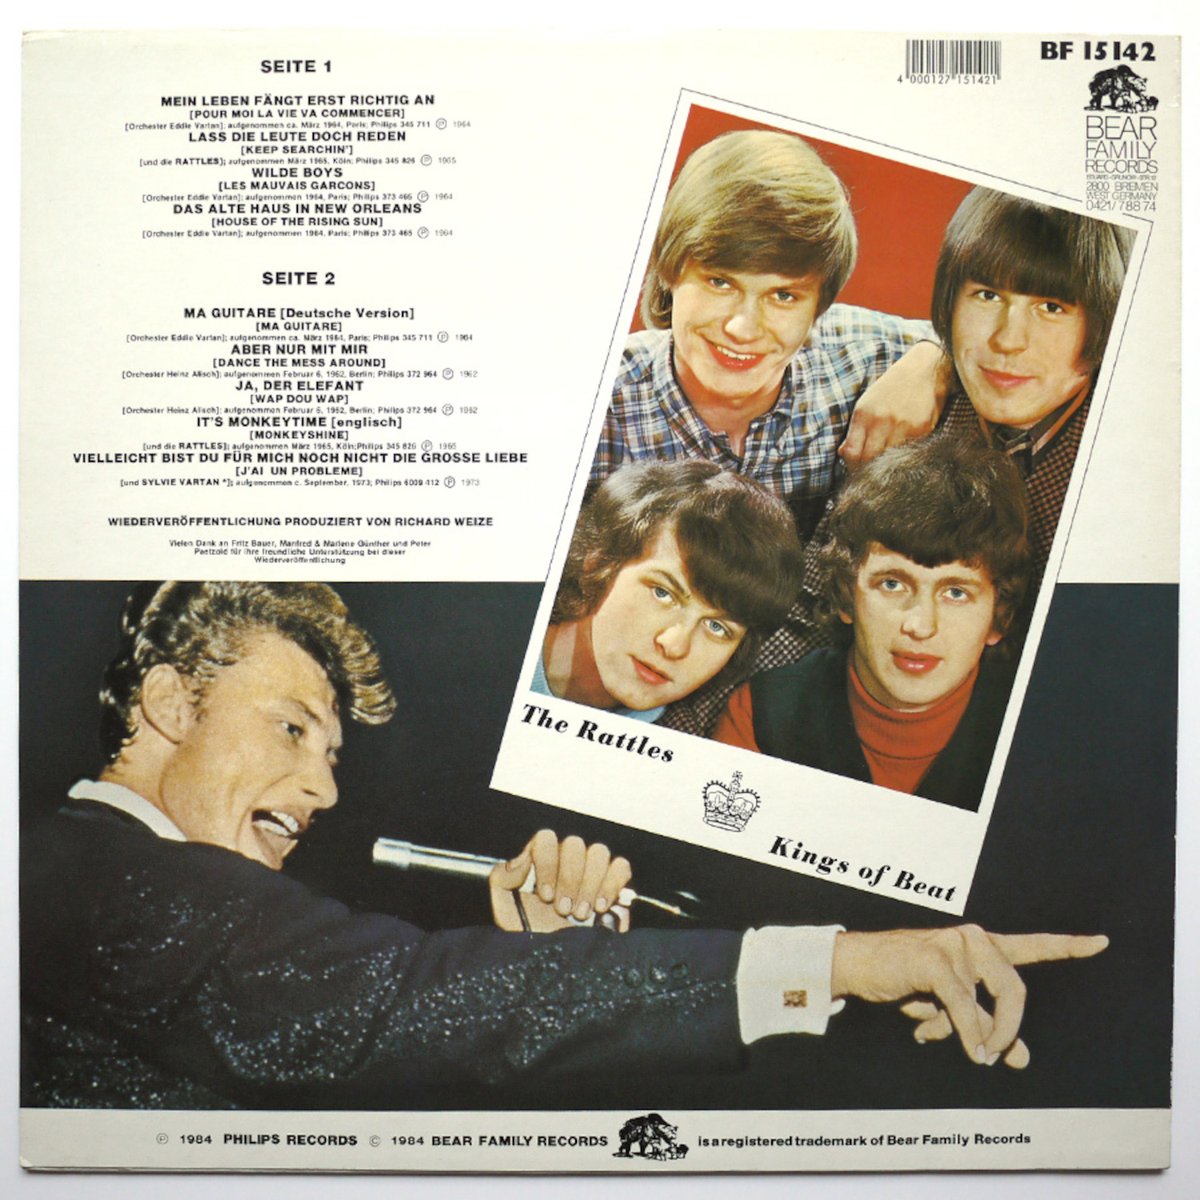 TRIFFT DIE RATTLES( 1984)   “ ALLEMAGNE “
33T 30cm LP Philips Ref: BF 15142 – Pressage Allemand

#johnnyhallyday